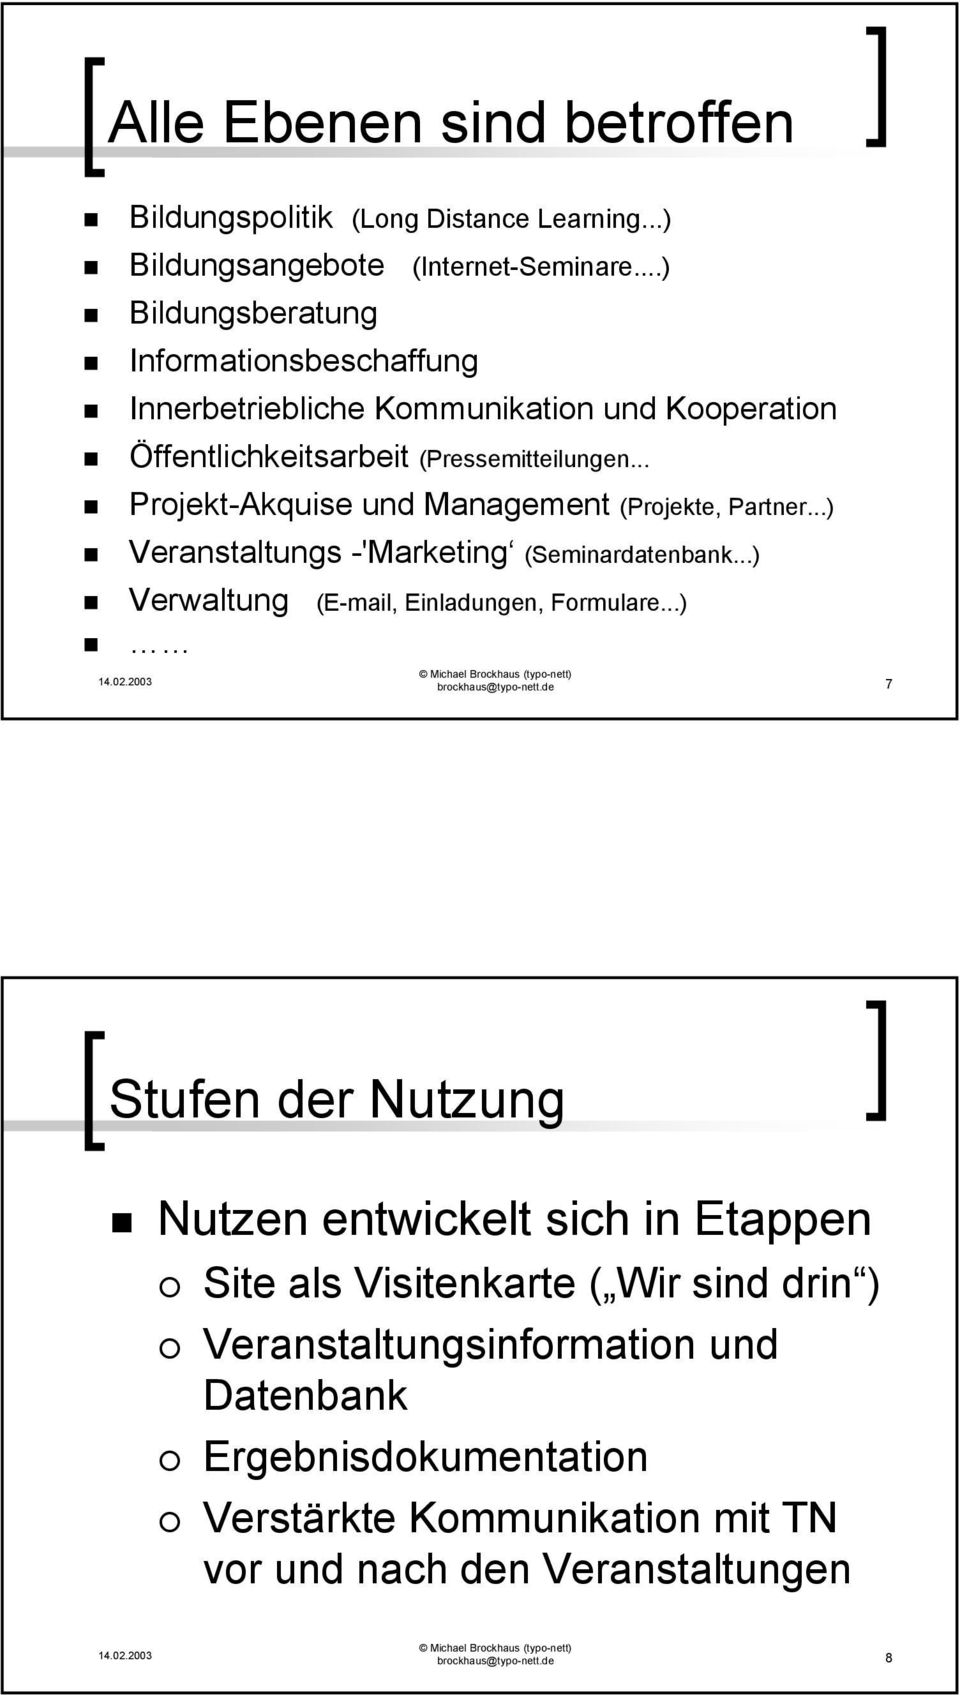 .. Projekt-Akquise und Management (Projekte, Partner...) Veranstaltungs -'Marketing (Seminardatenbank...) Verwaltung (E-mail, Einladungen, Formulare.